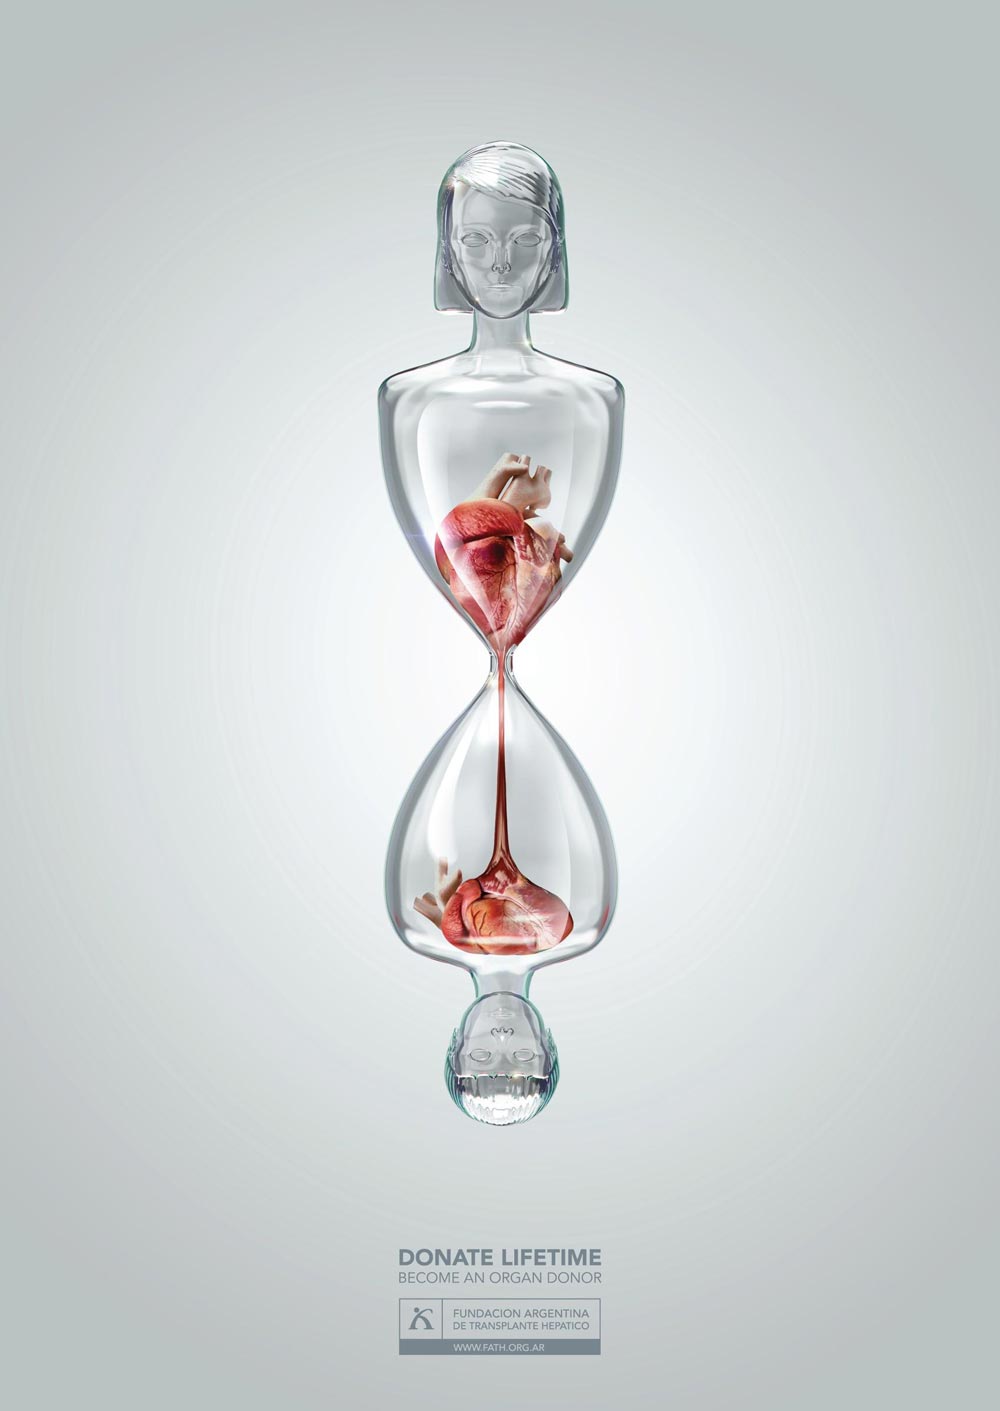 12张关于器官捐献的公益海报